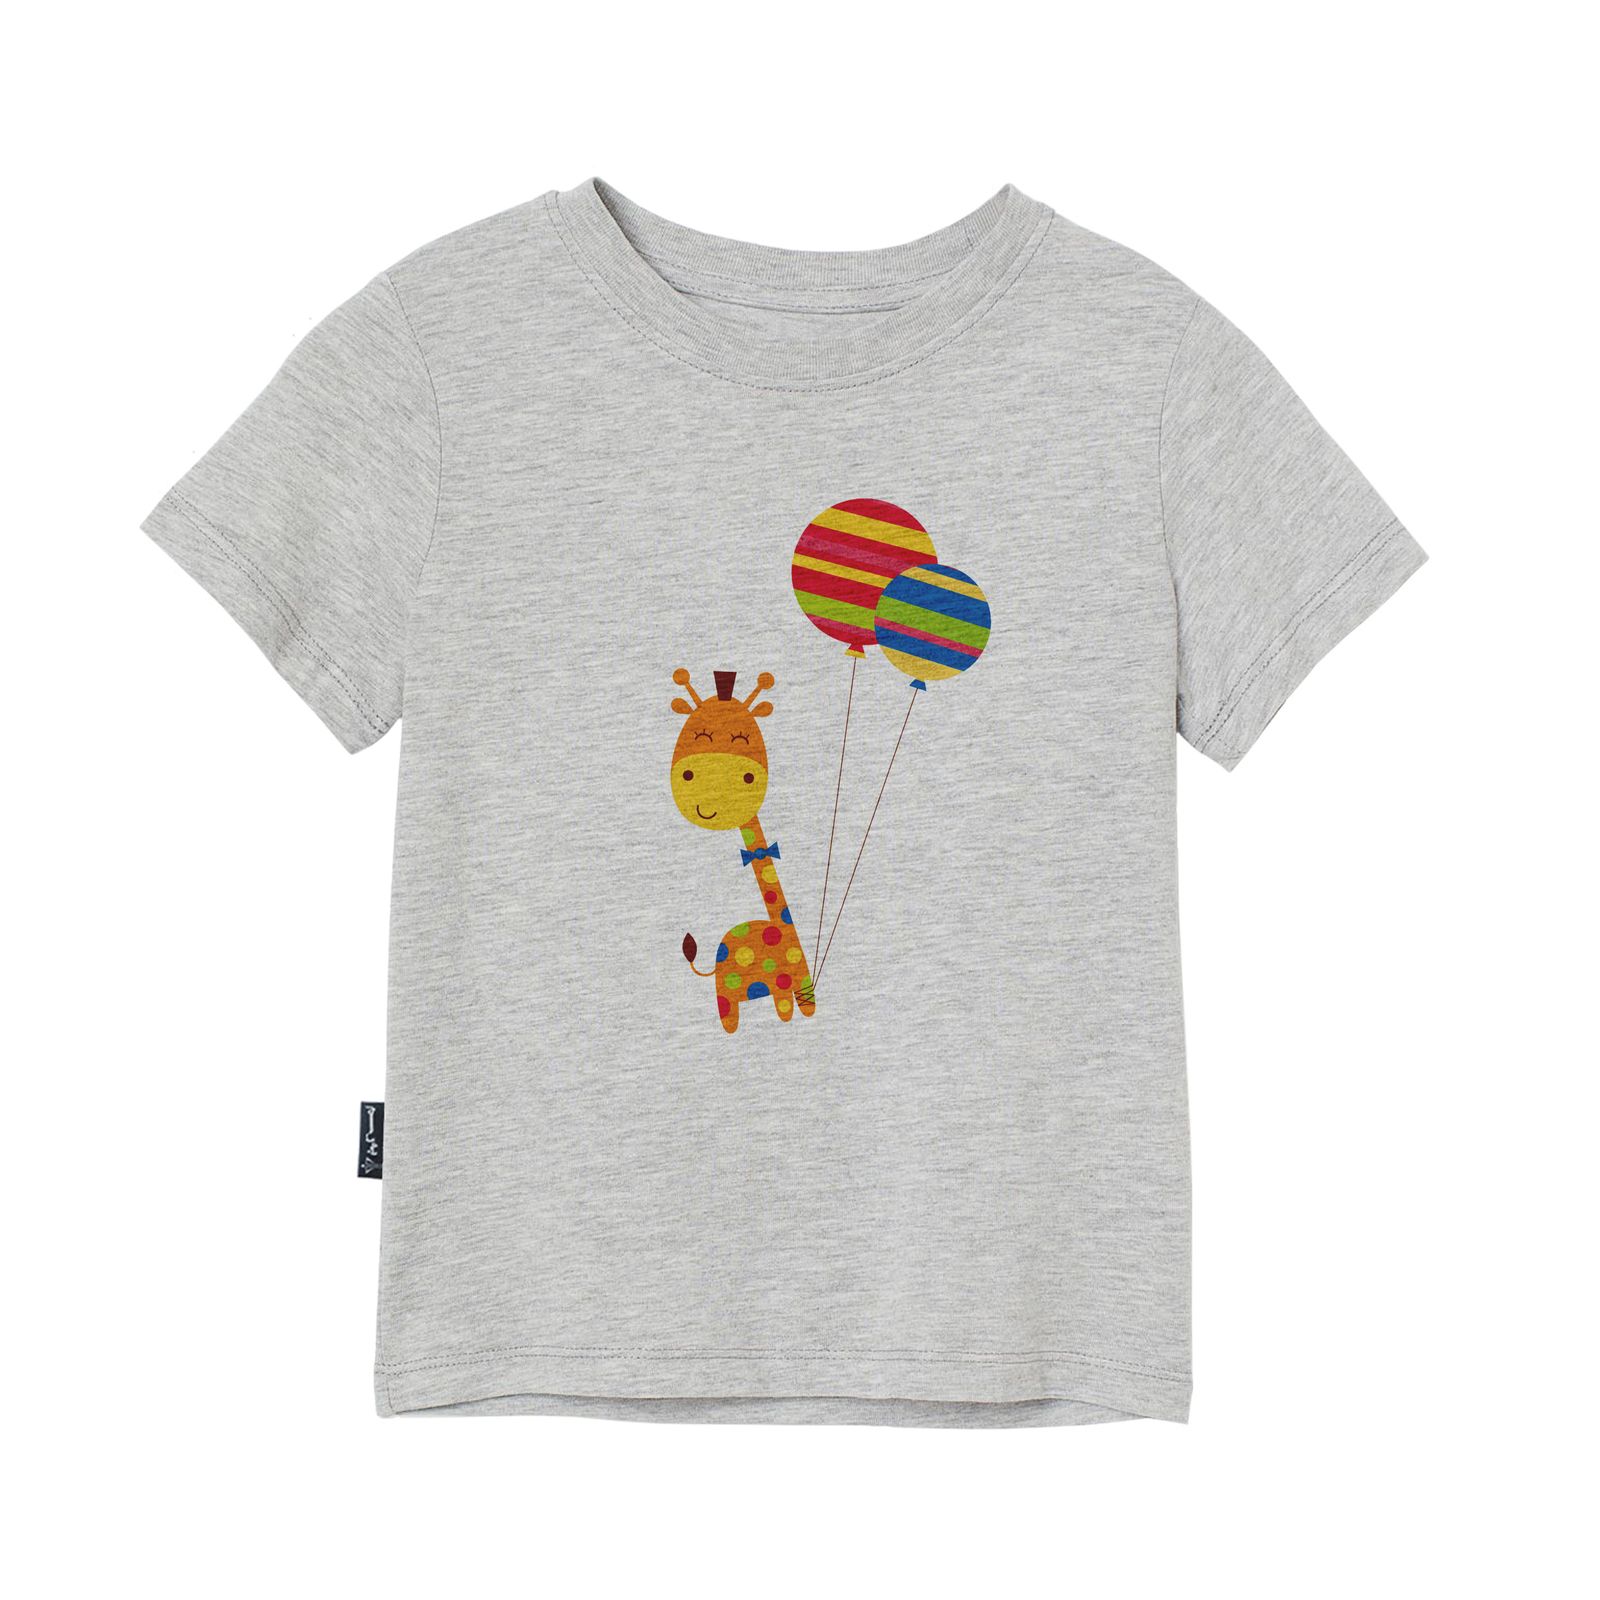 تی شرت آستین کوتاه پسرانه به رسم مدل زرافه و بادکنک کد 1114 -  - 3